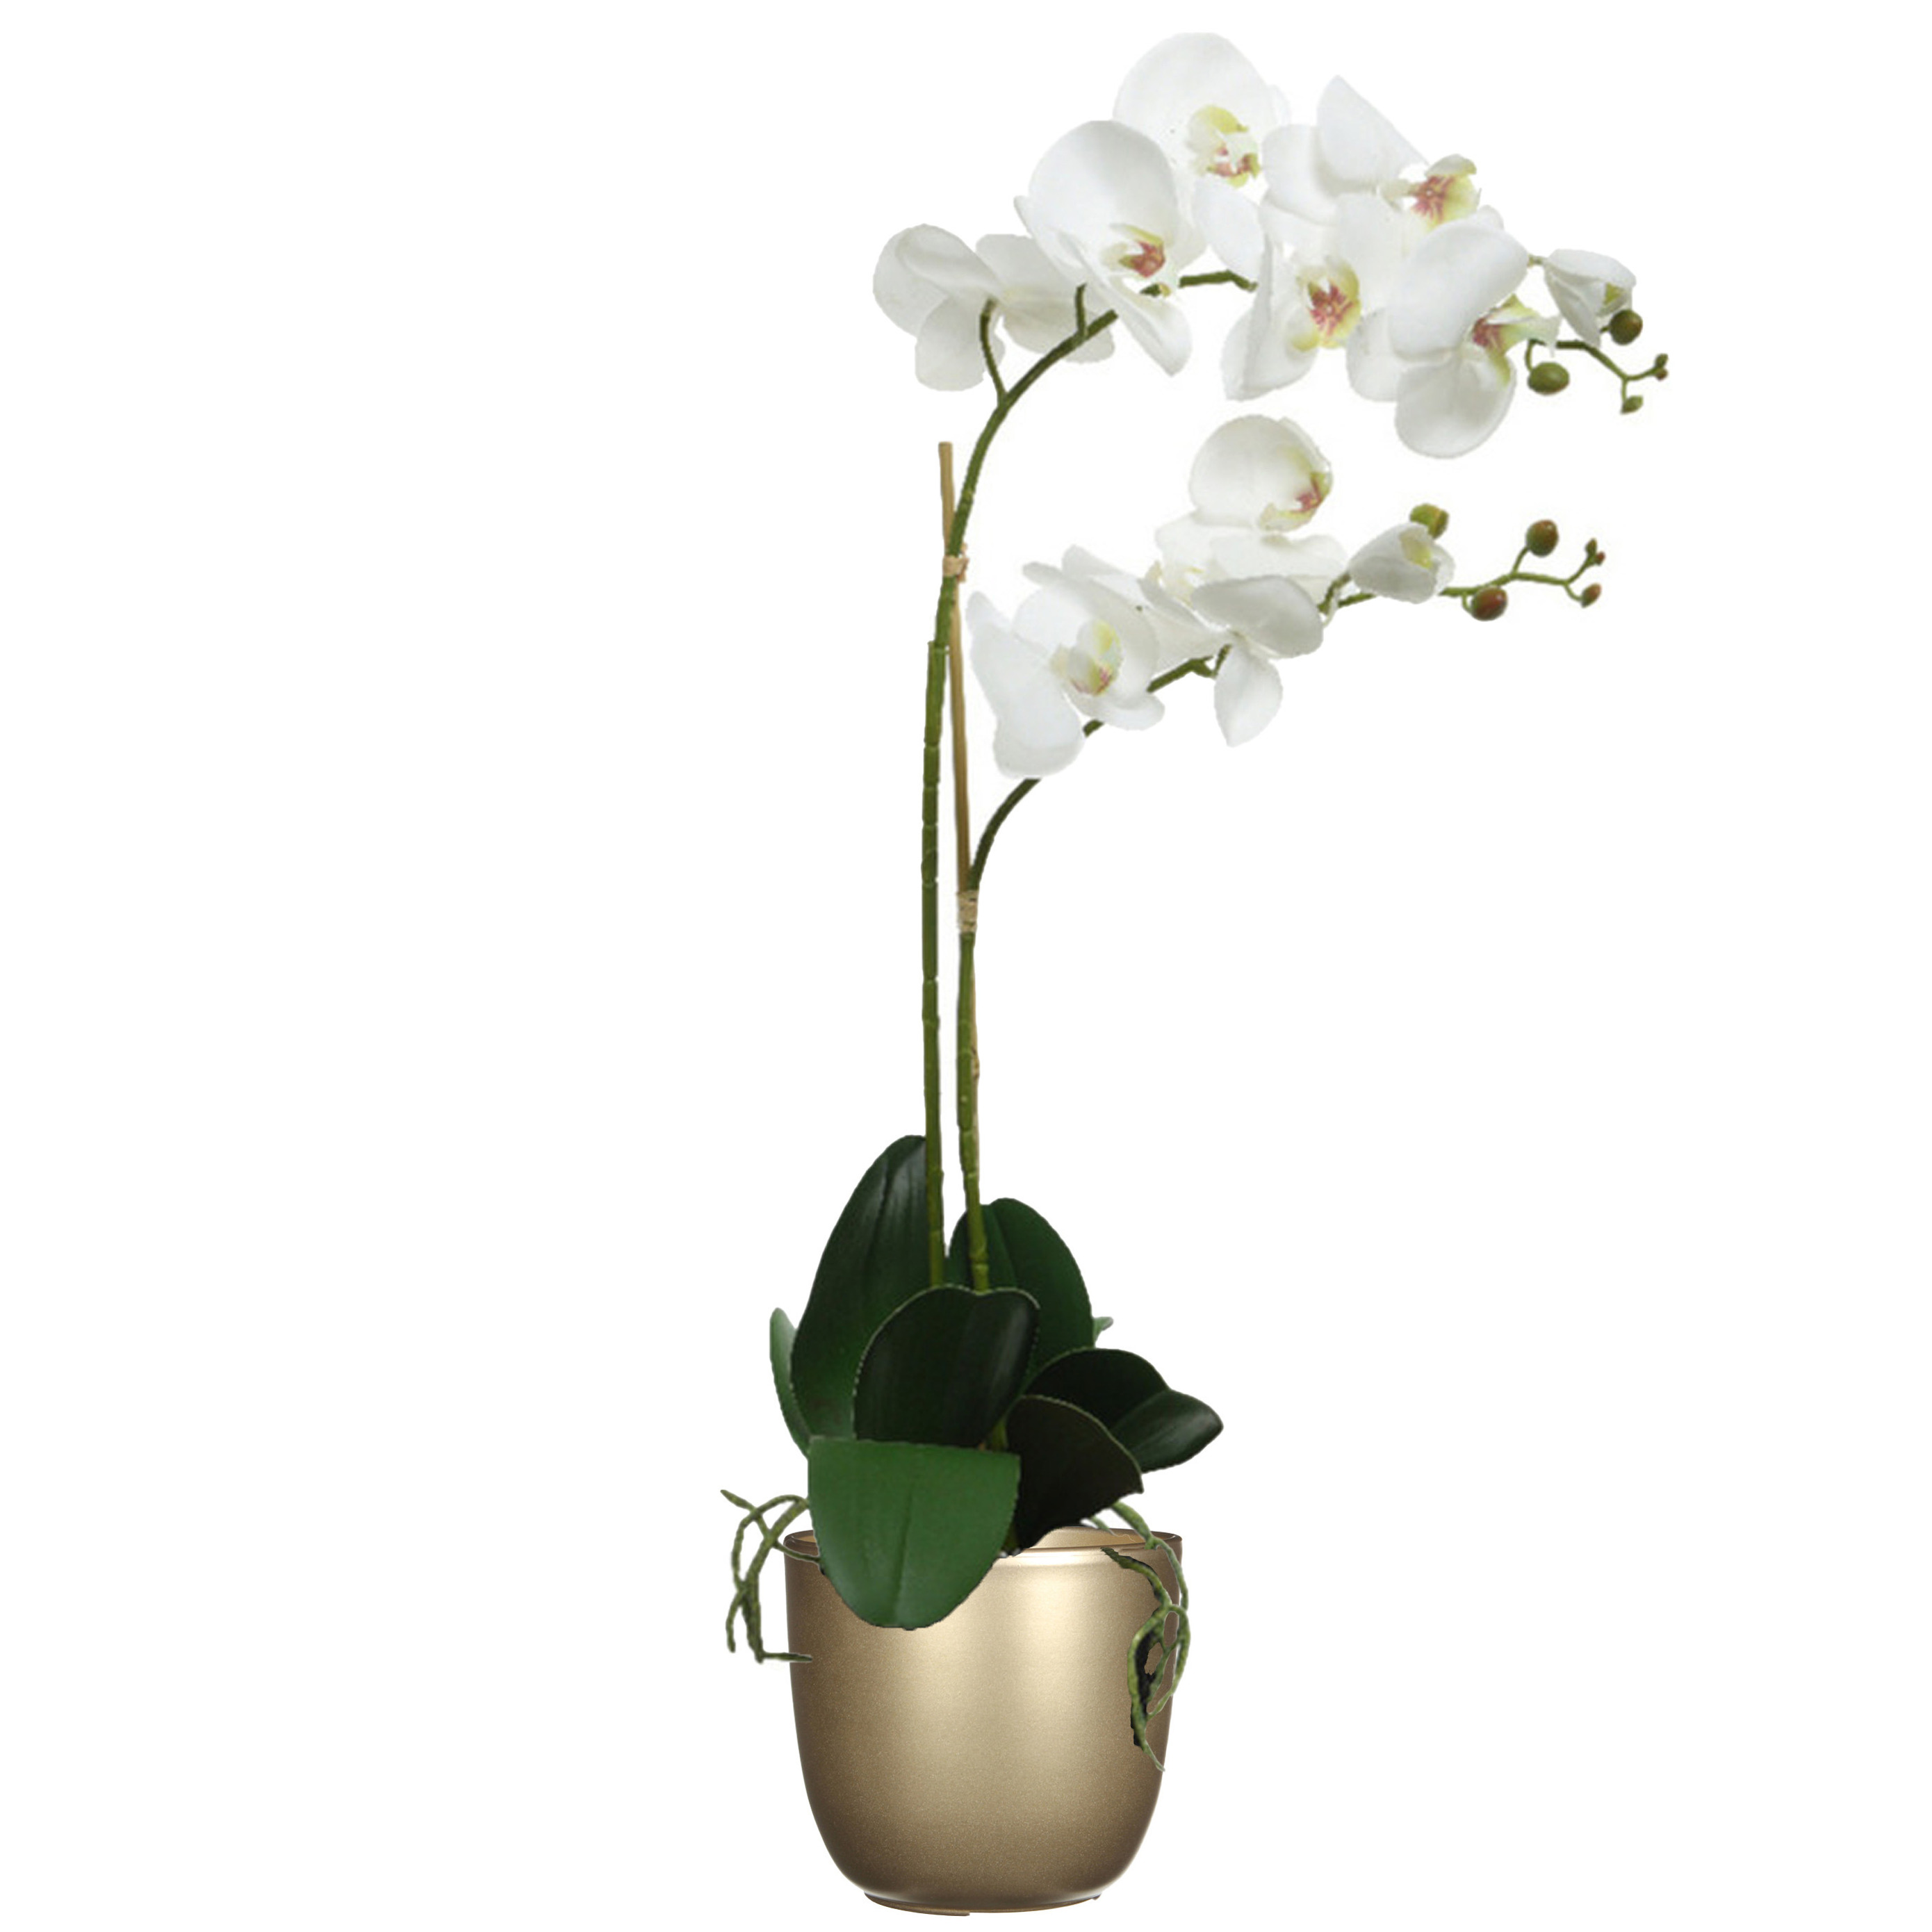 Orchidee kunstplant wit - 62 cm - inclusief bloempot goud glans - Kunstbloemen in pot